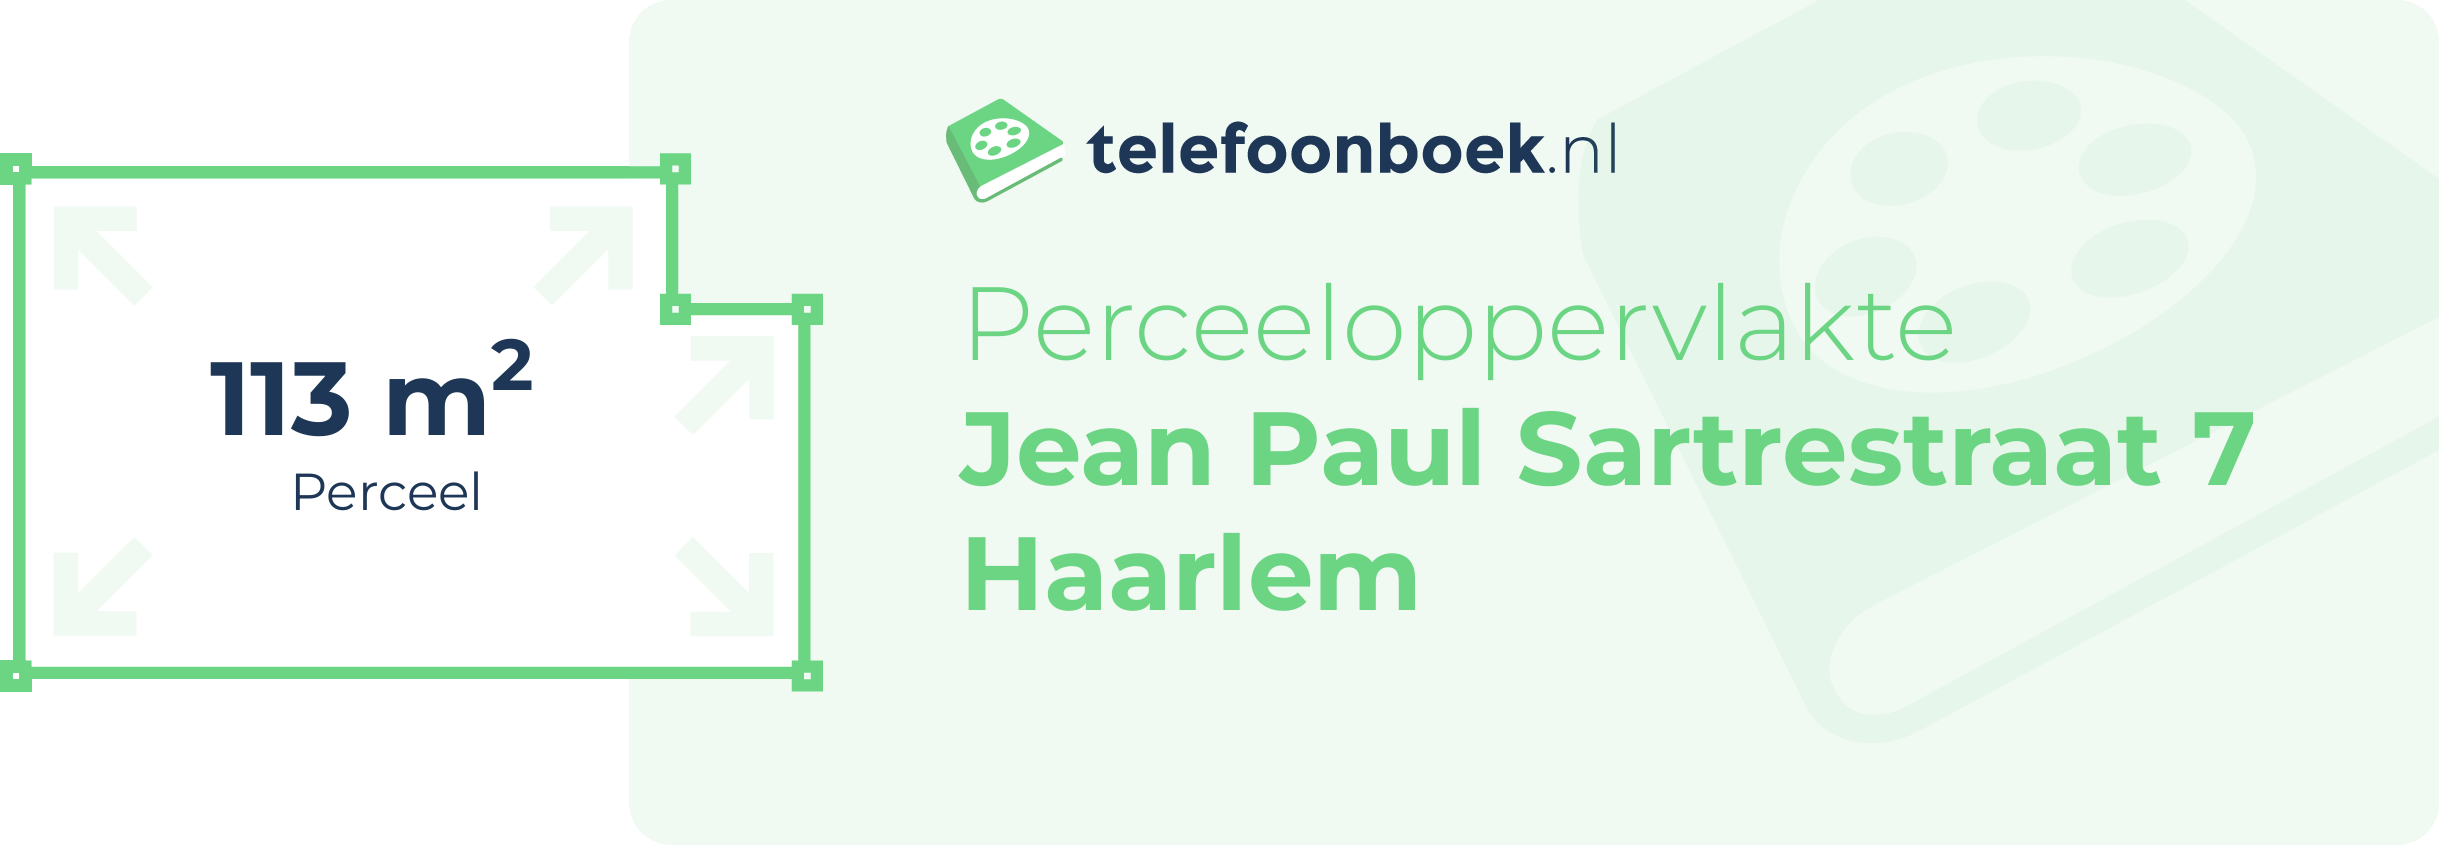 Perceeloppervlakte Jean Paul Sartrestraat 7 Haarlem